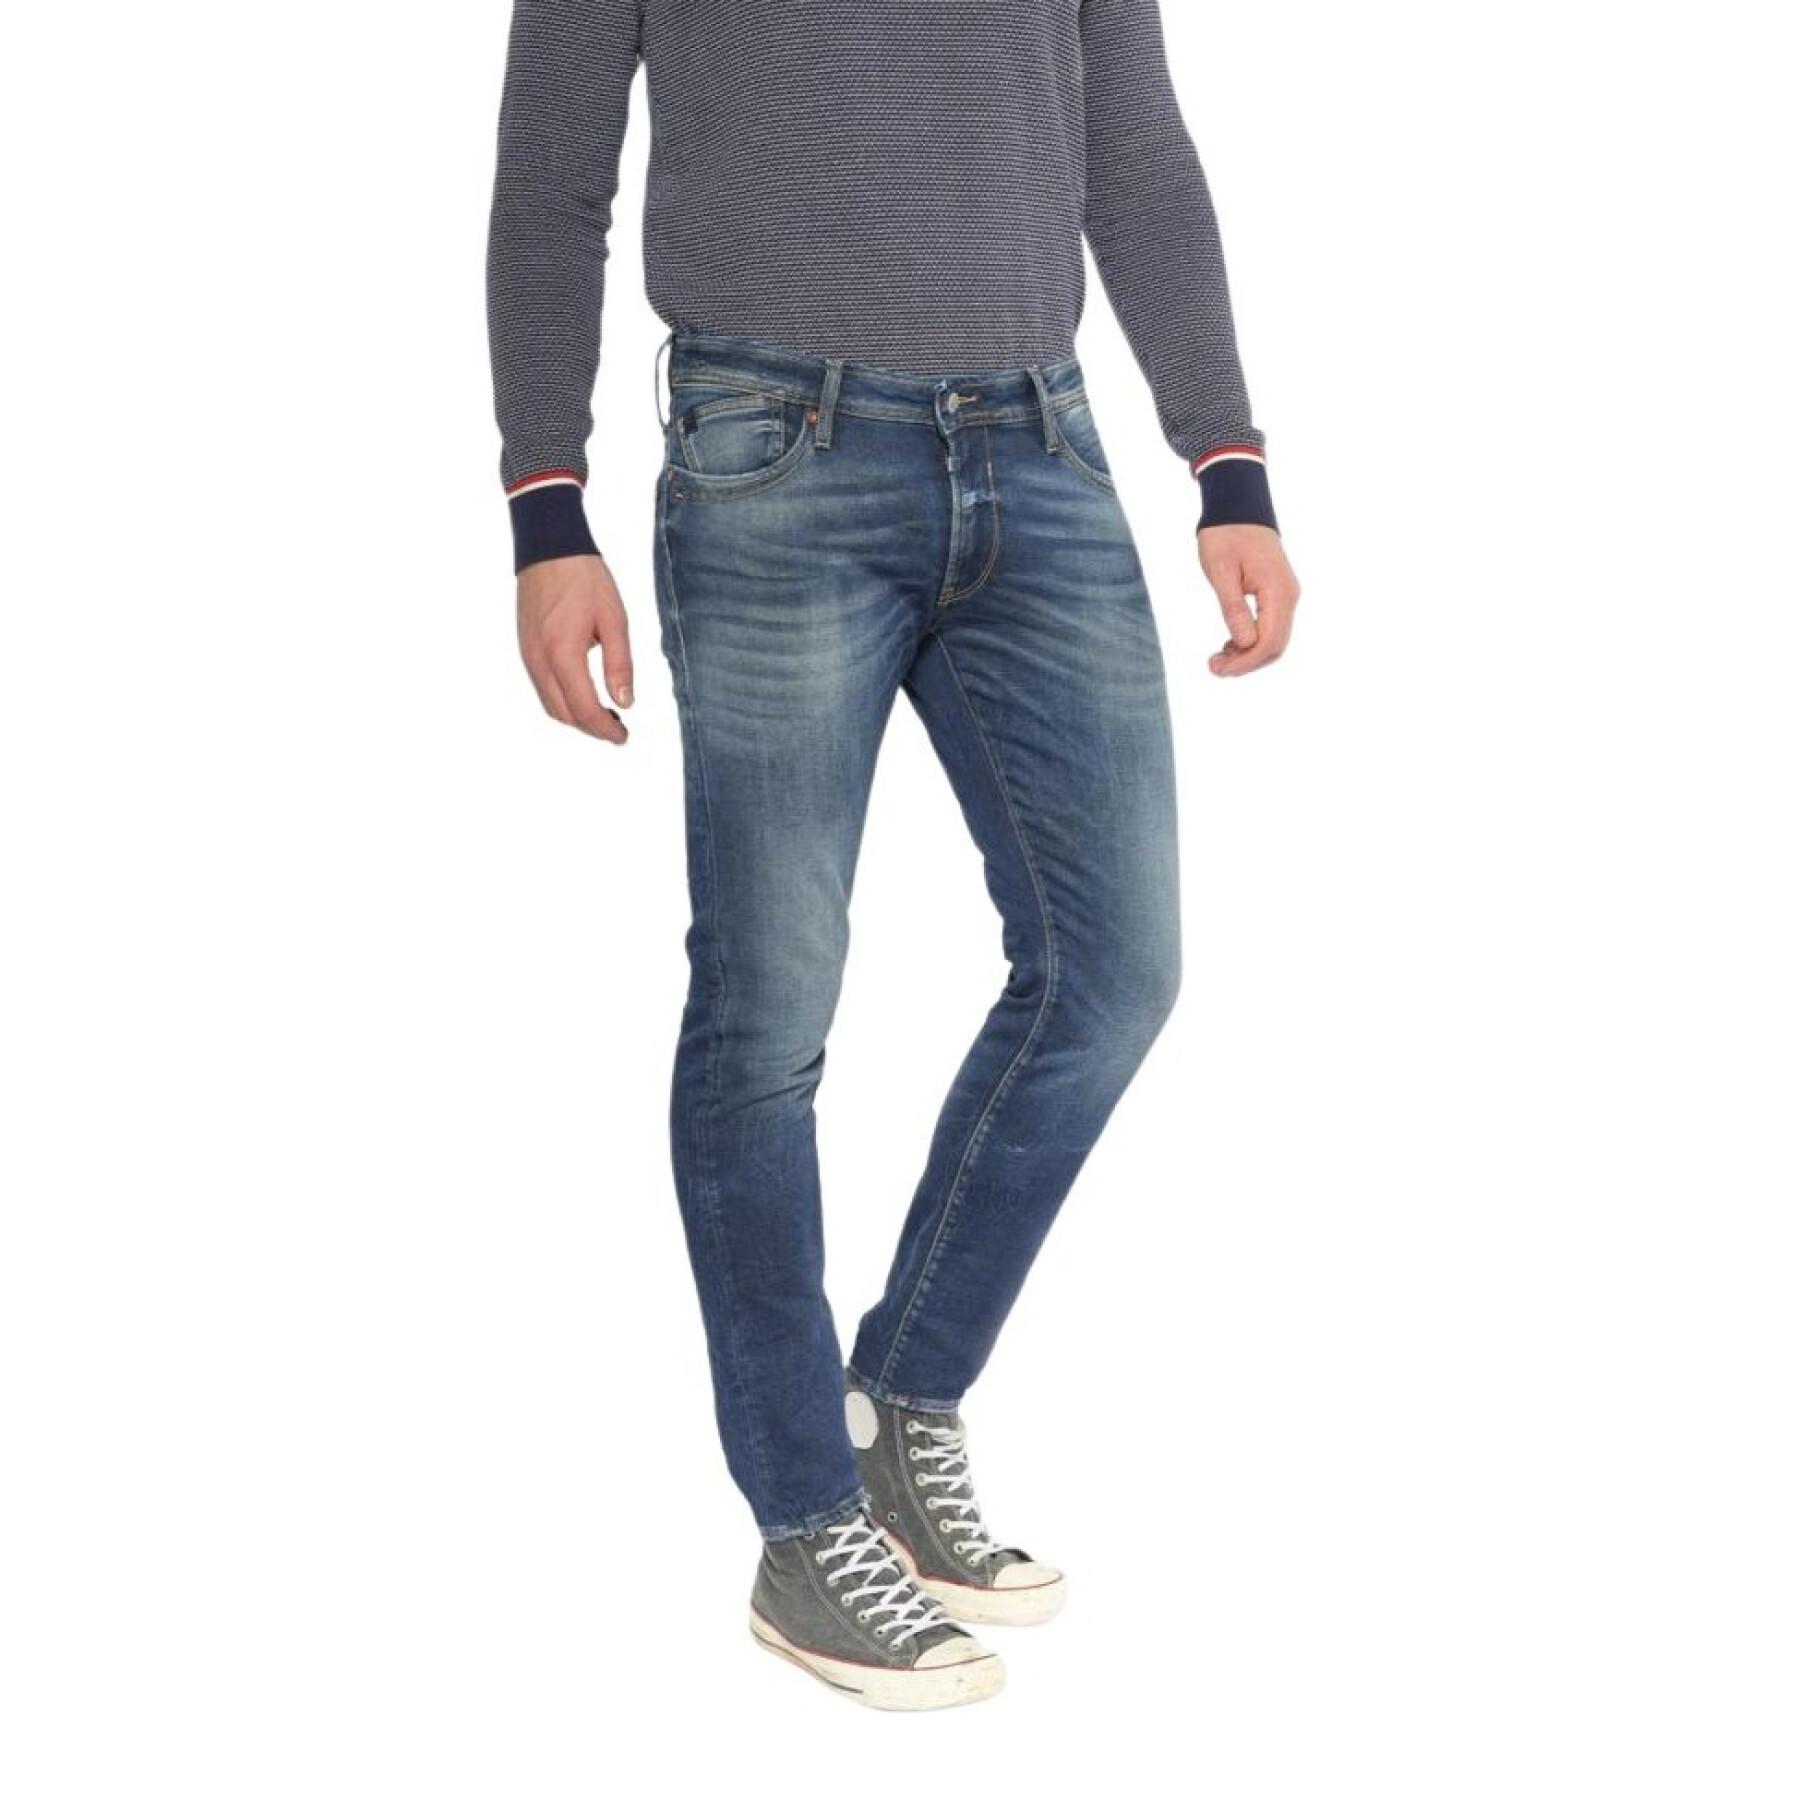 Slim jeans Le temps des cerises Gawler 700/12